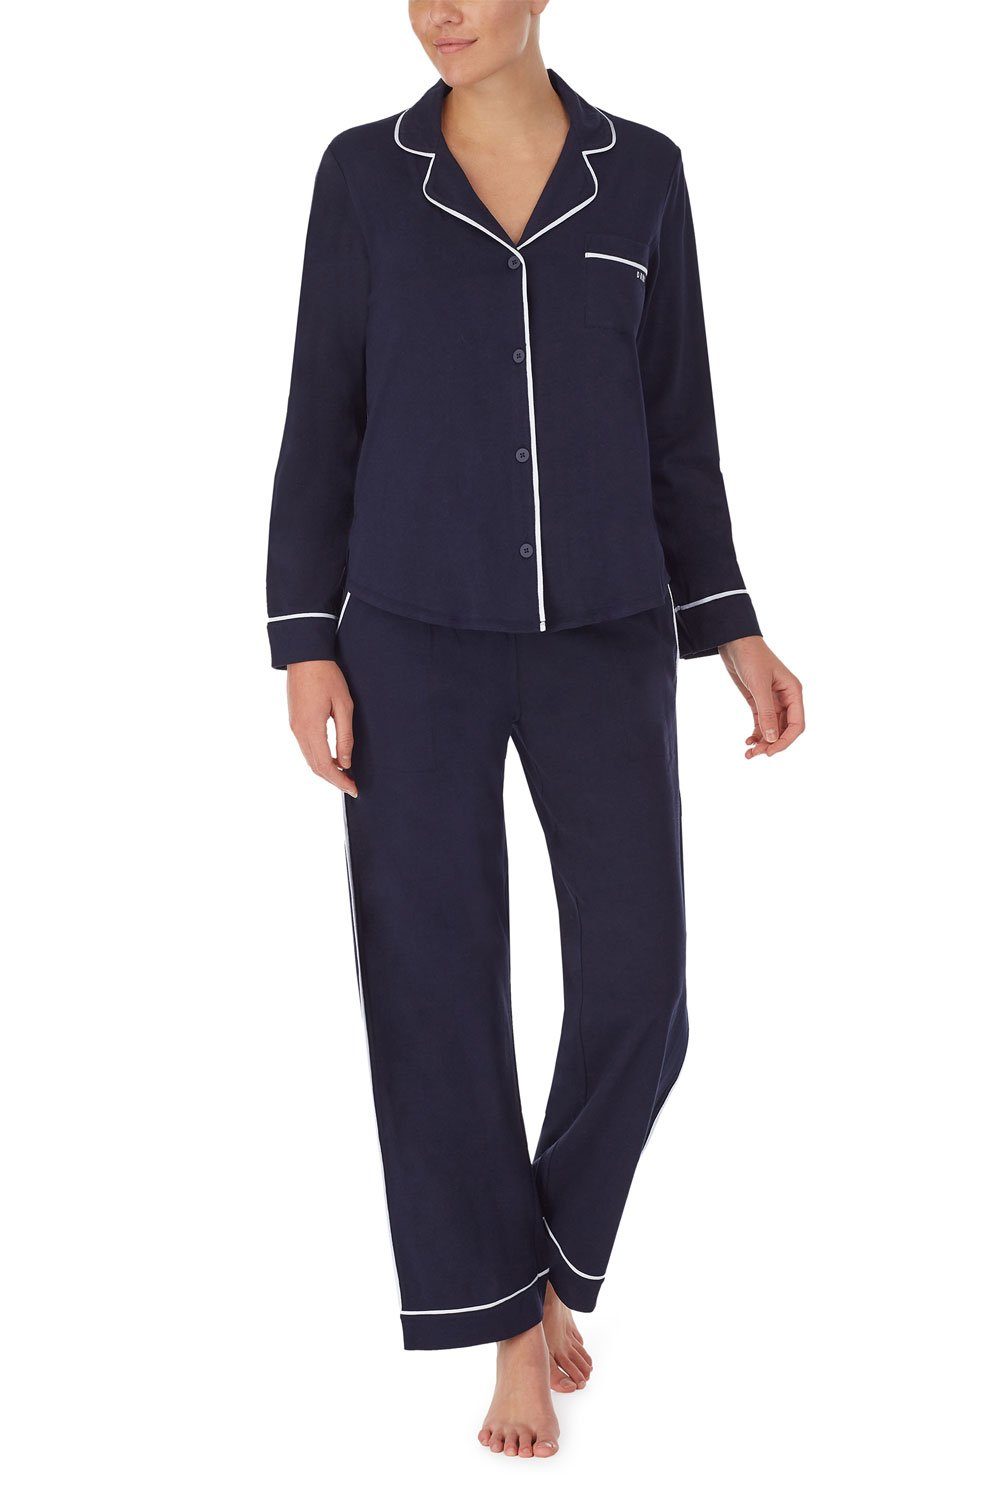 DKNY Pyjama Top & Pant Set YI2719259 navy